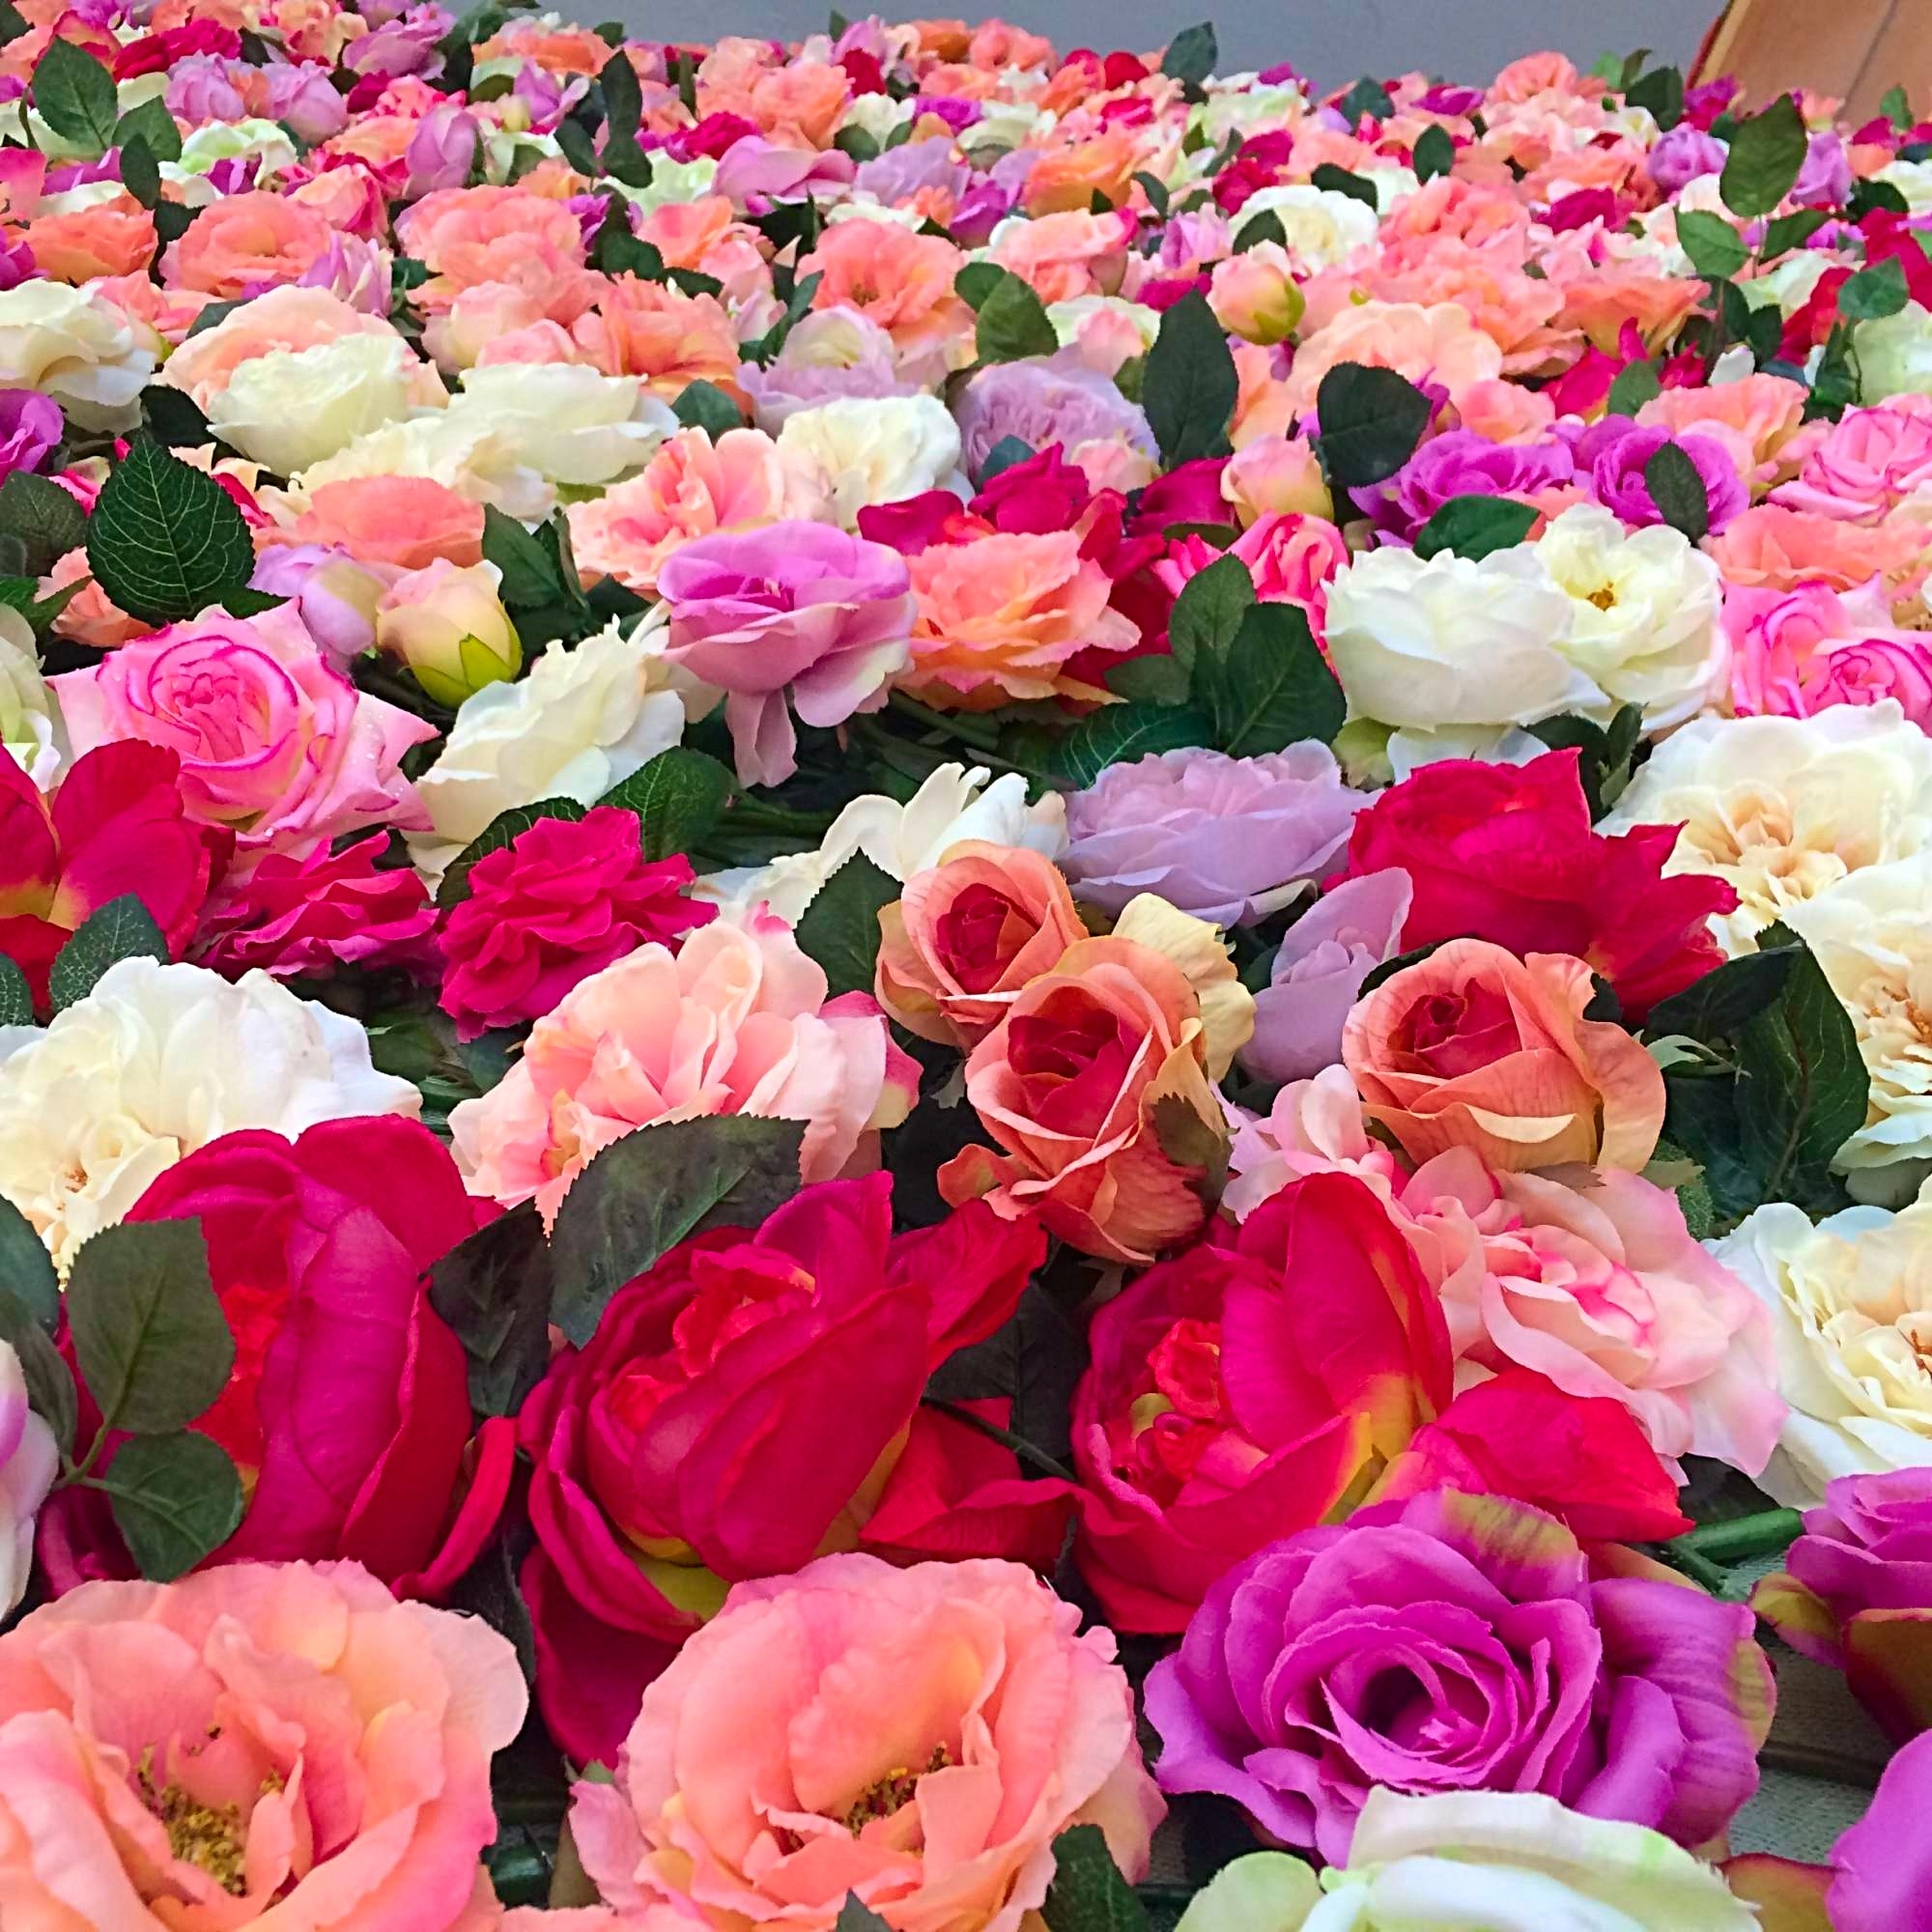 Les couleurs sont choisies dans la gamme des roses.